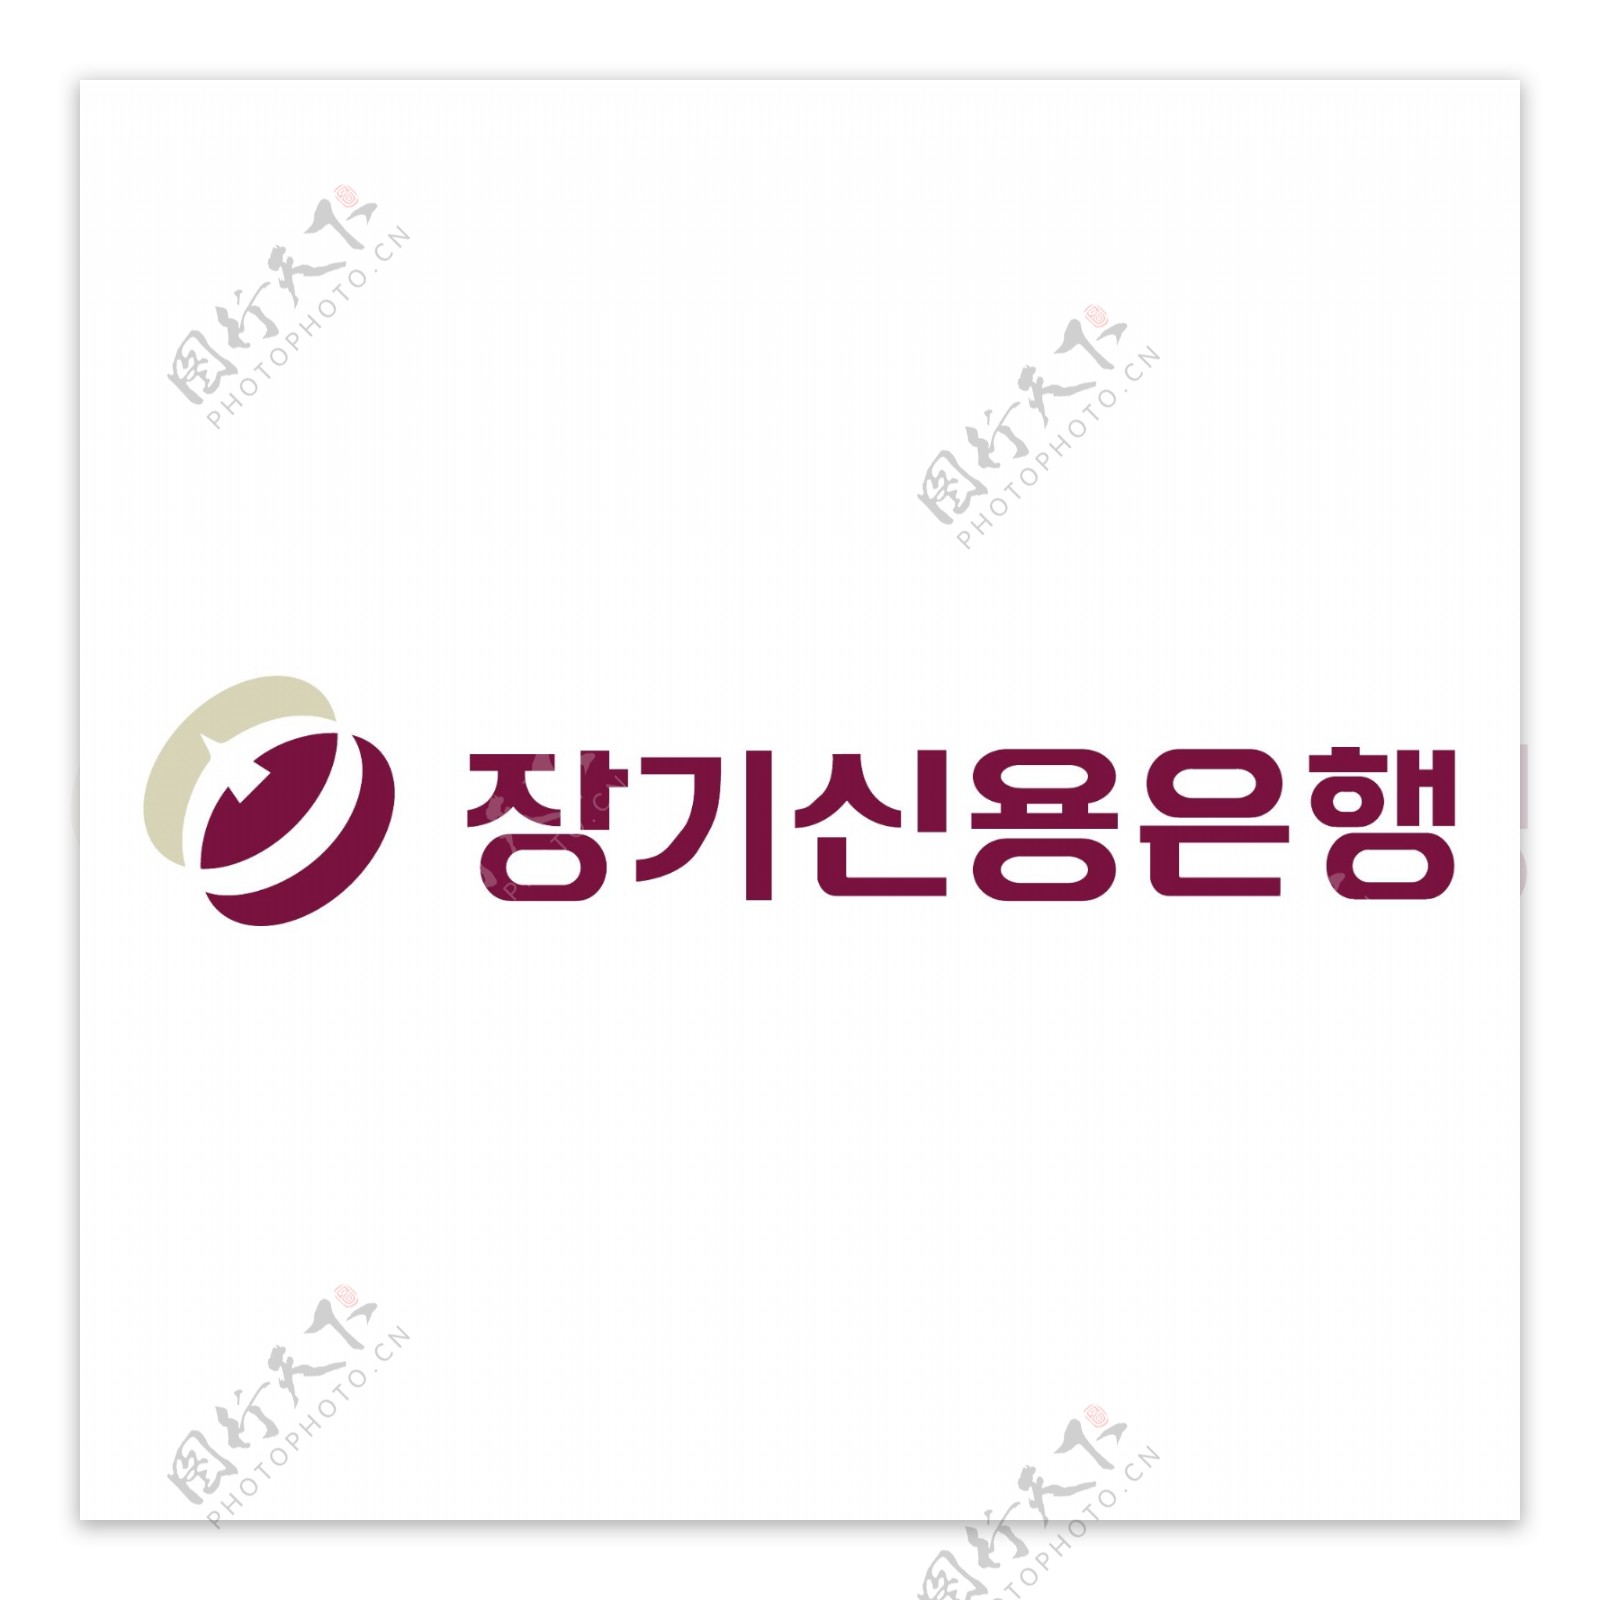 韩国长期信贷银行0